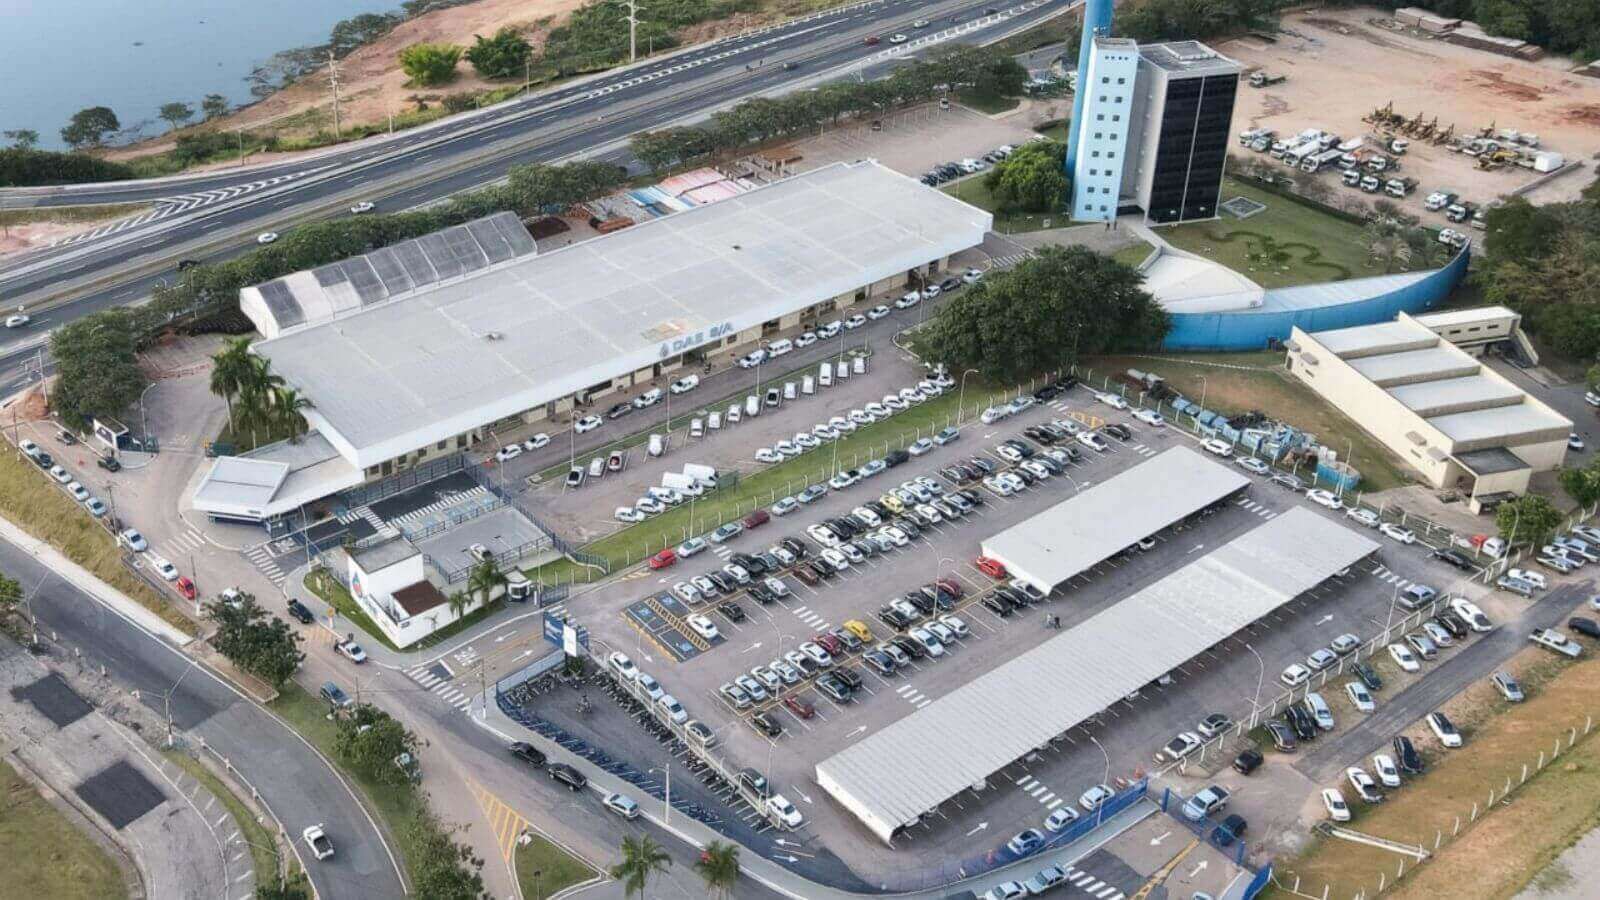 Vista aérea da DAE Jundiaí com amplo estacionamento cheio de carros.